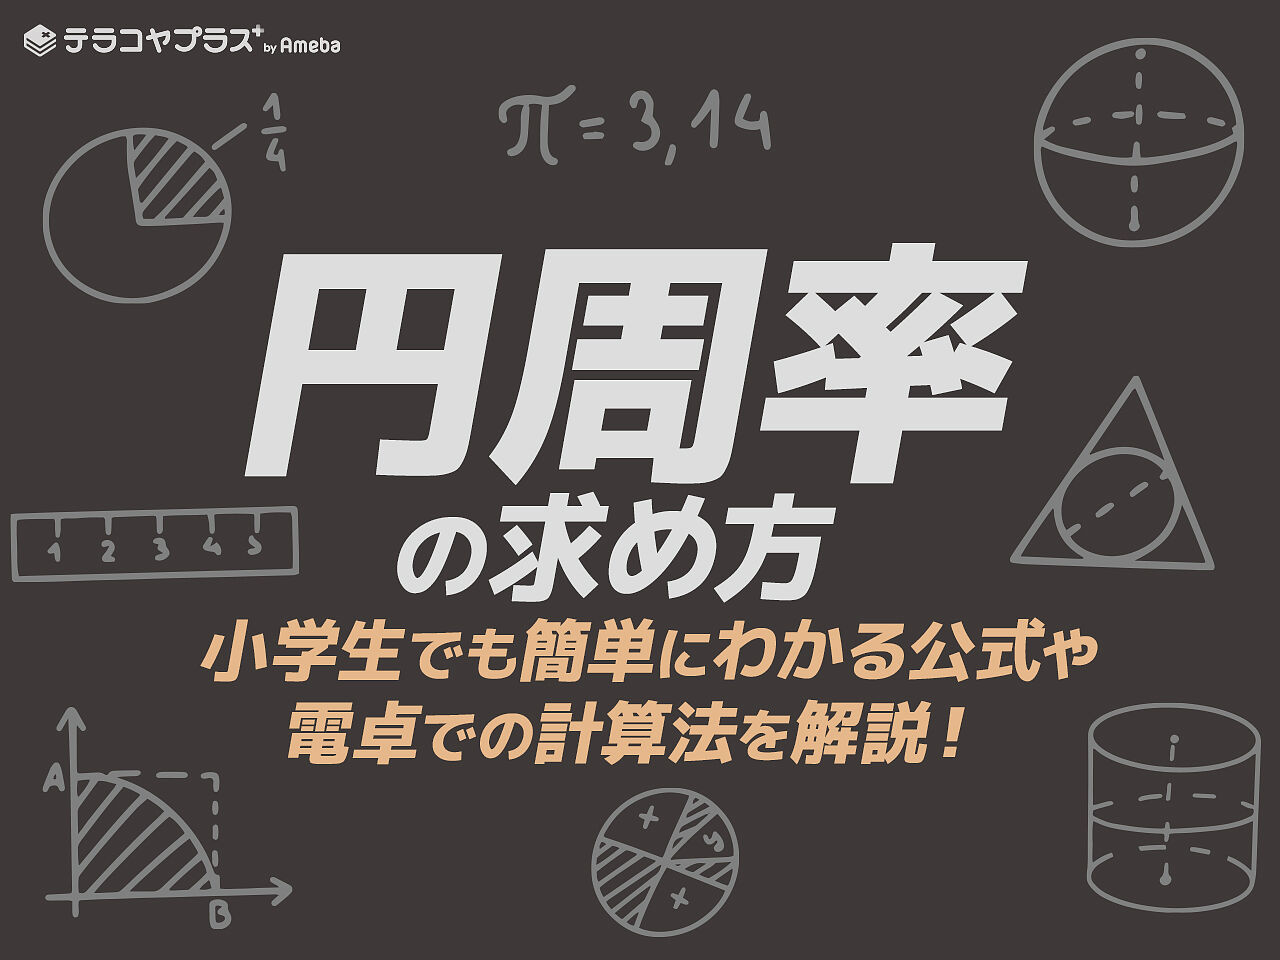 円周率の求め方 小学生でも簡単 公式や電卓での計算法を解説 テラコヤプラス By Ameba